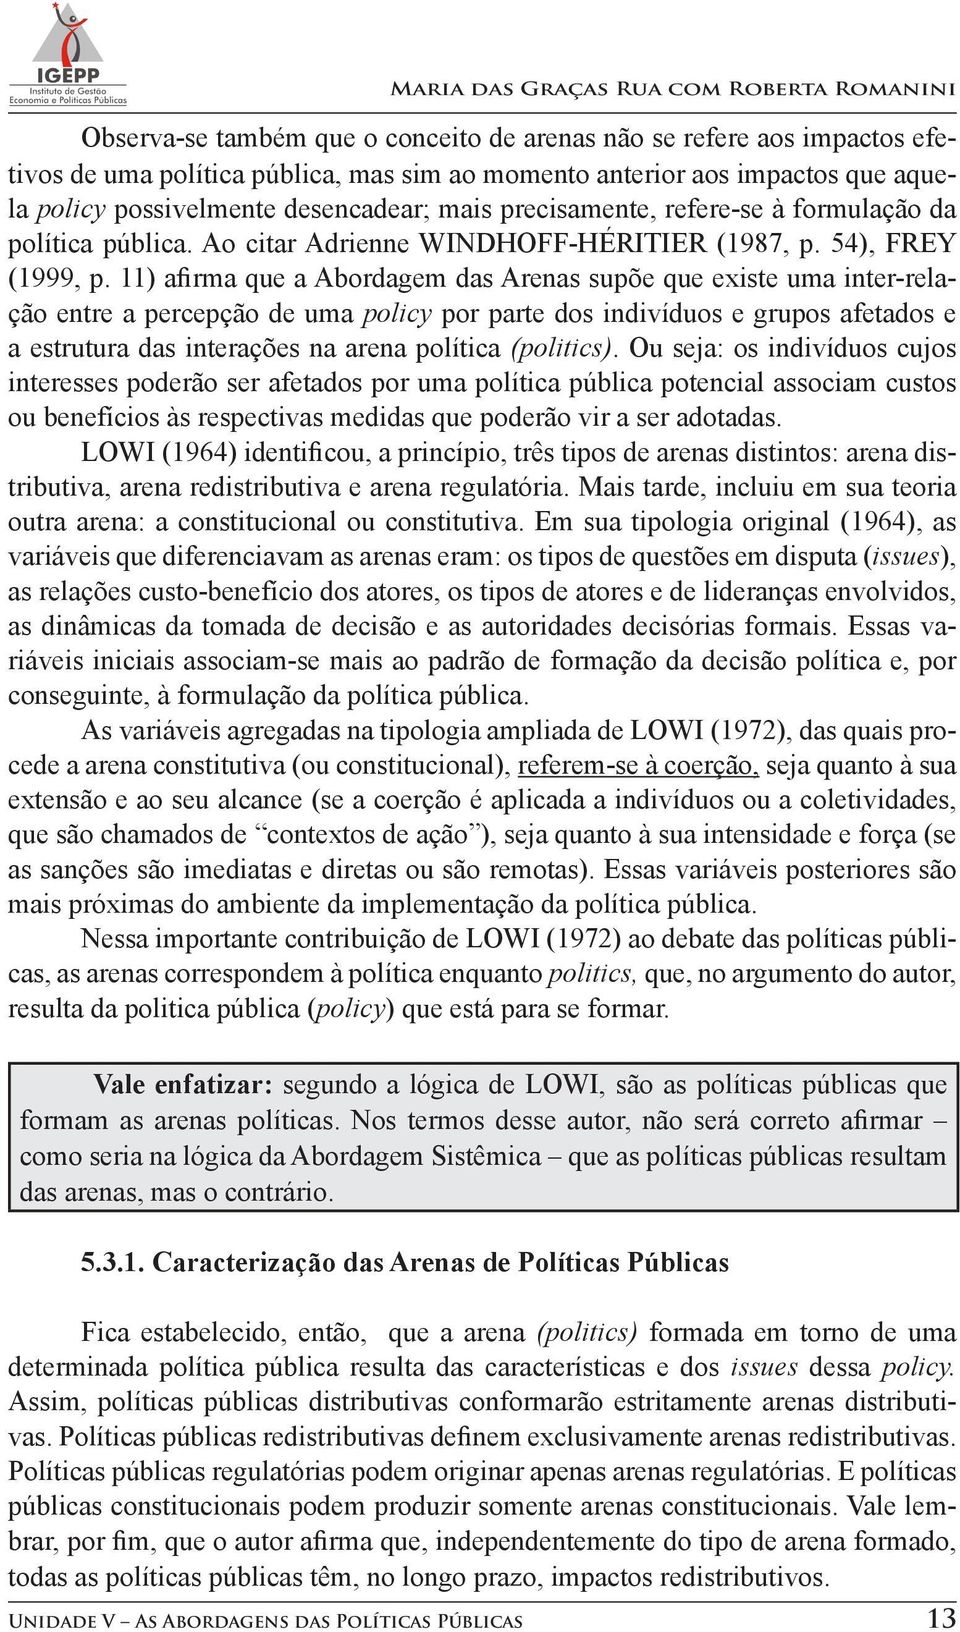 11) afirma que a Abordagem das Arenas supõe que existe uma inter-relação entre a percepção de uma policy por parte dos indivíduos e grupos afetados e a estrutura das interações na arena política